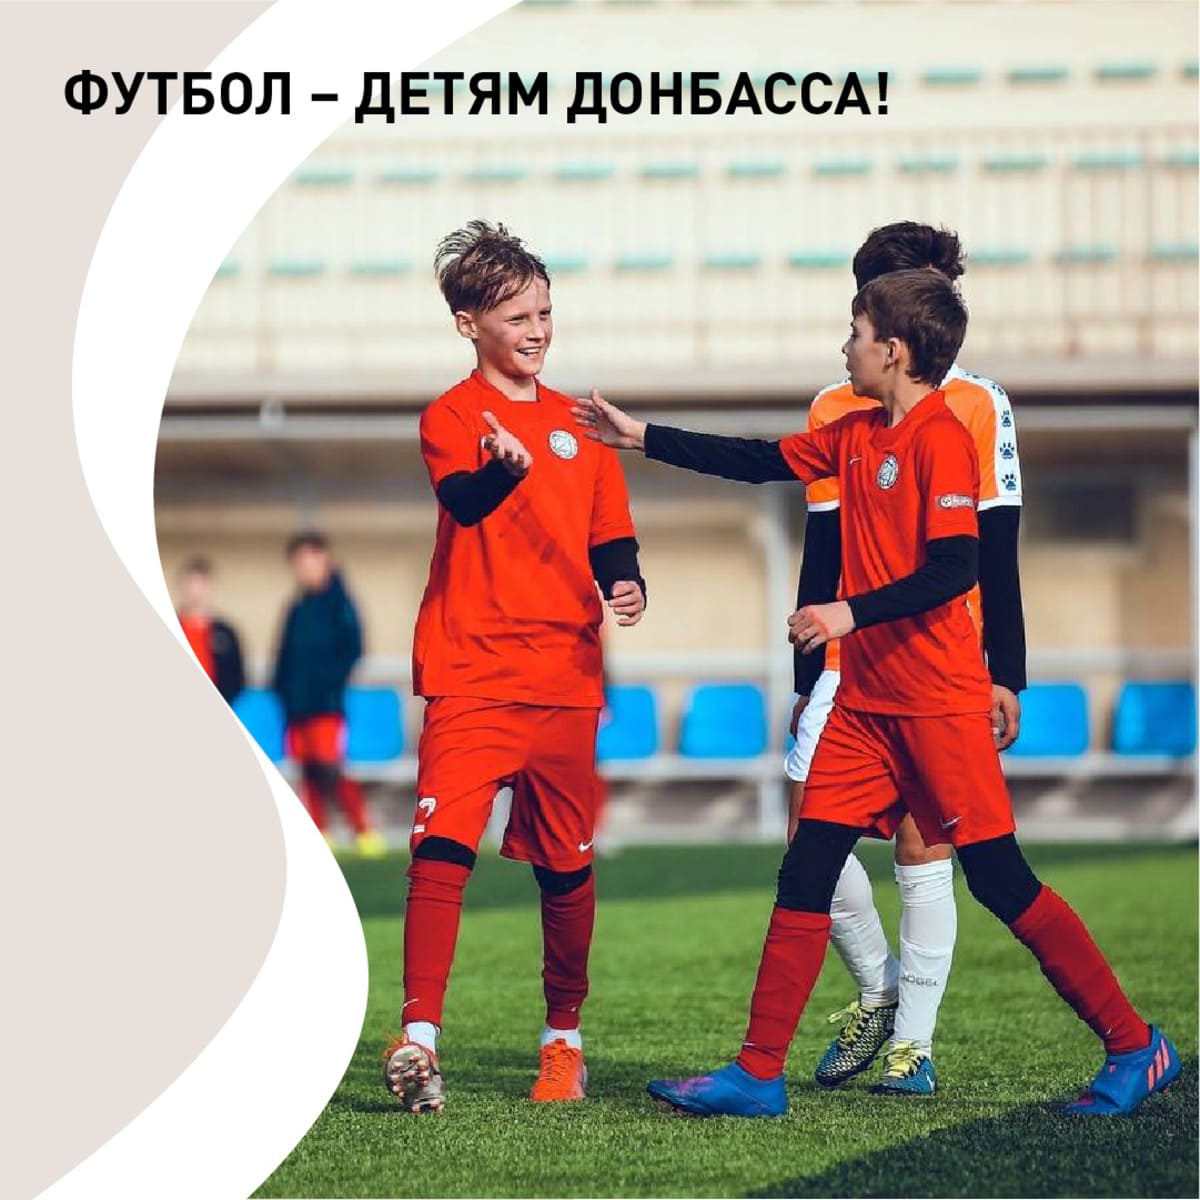 “Футбол – детям Донбасса!”